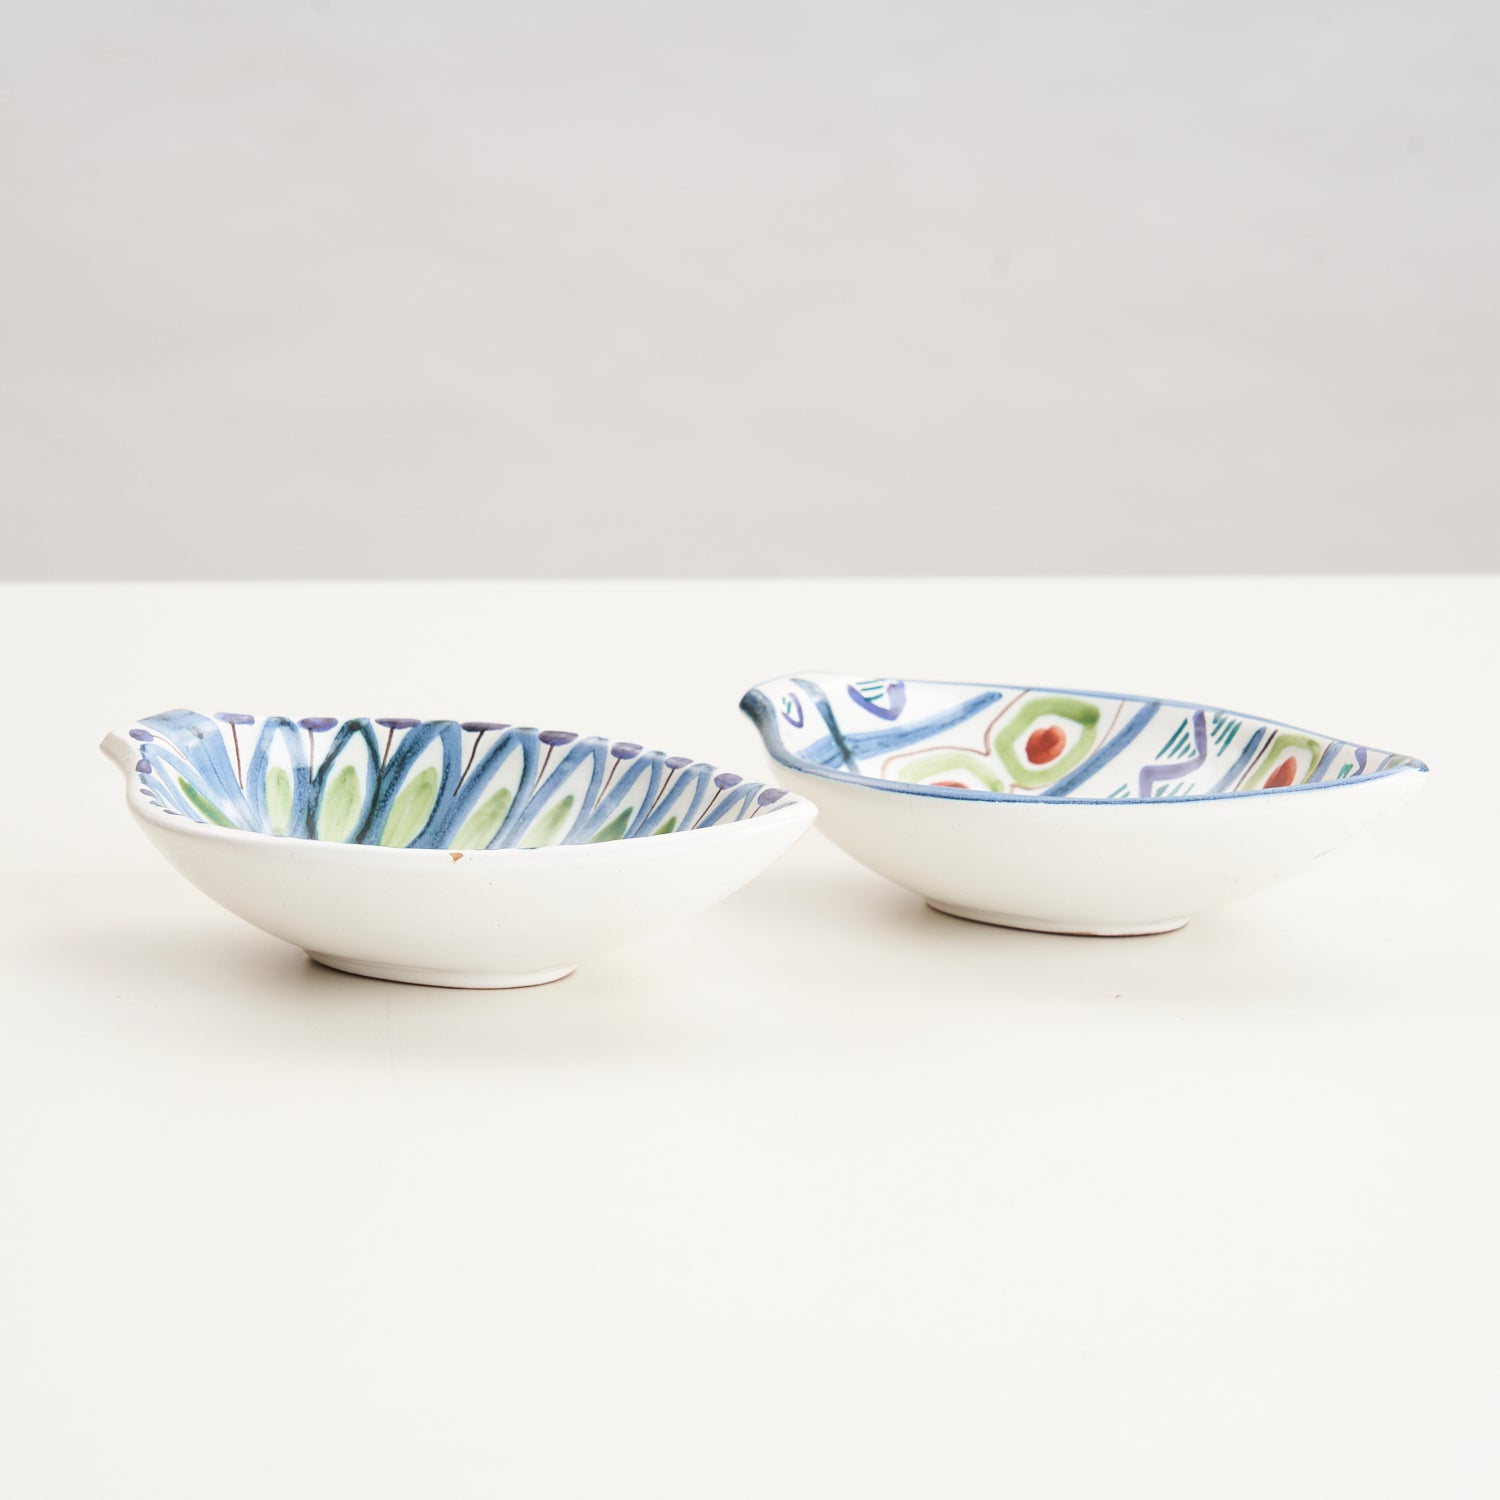 Pair of Vintage Ceramic Dishes